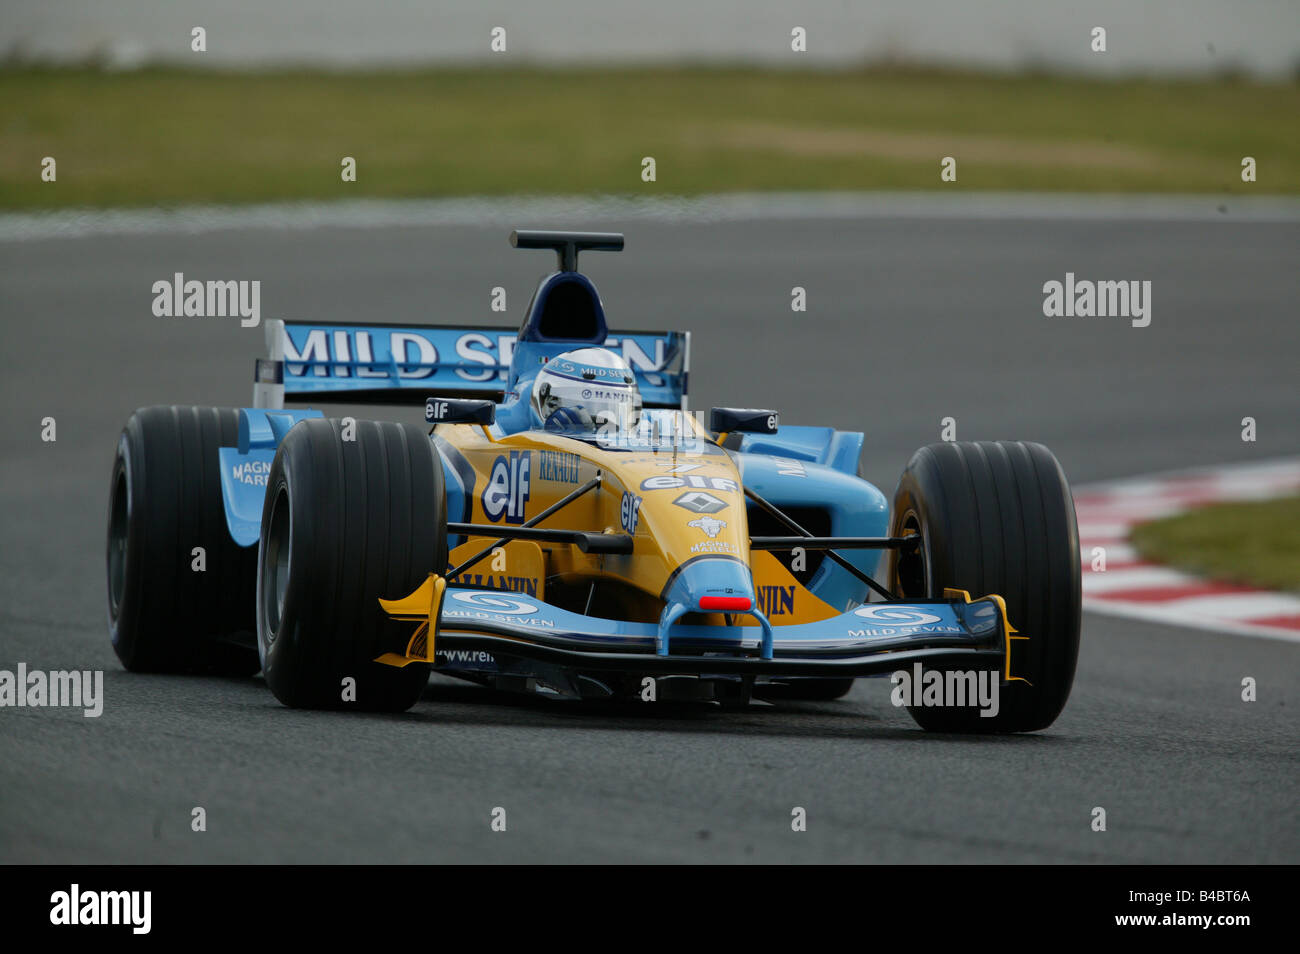 Lo sport del motore, Felipe Massa, formazione Formel 1, razza, persone, Race Driver, racetrack, circuito, Race Course, curva, guida, dia Foto Stock